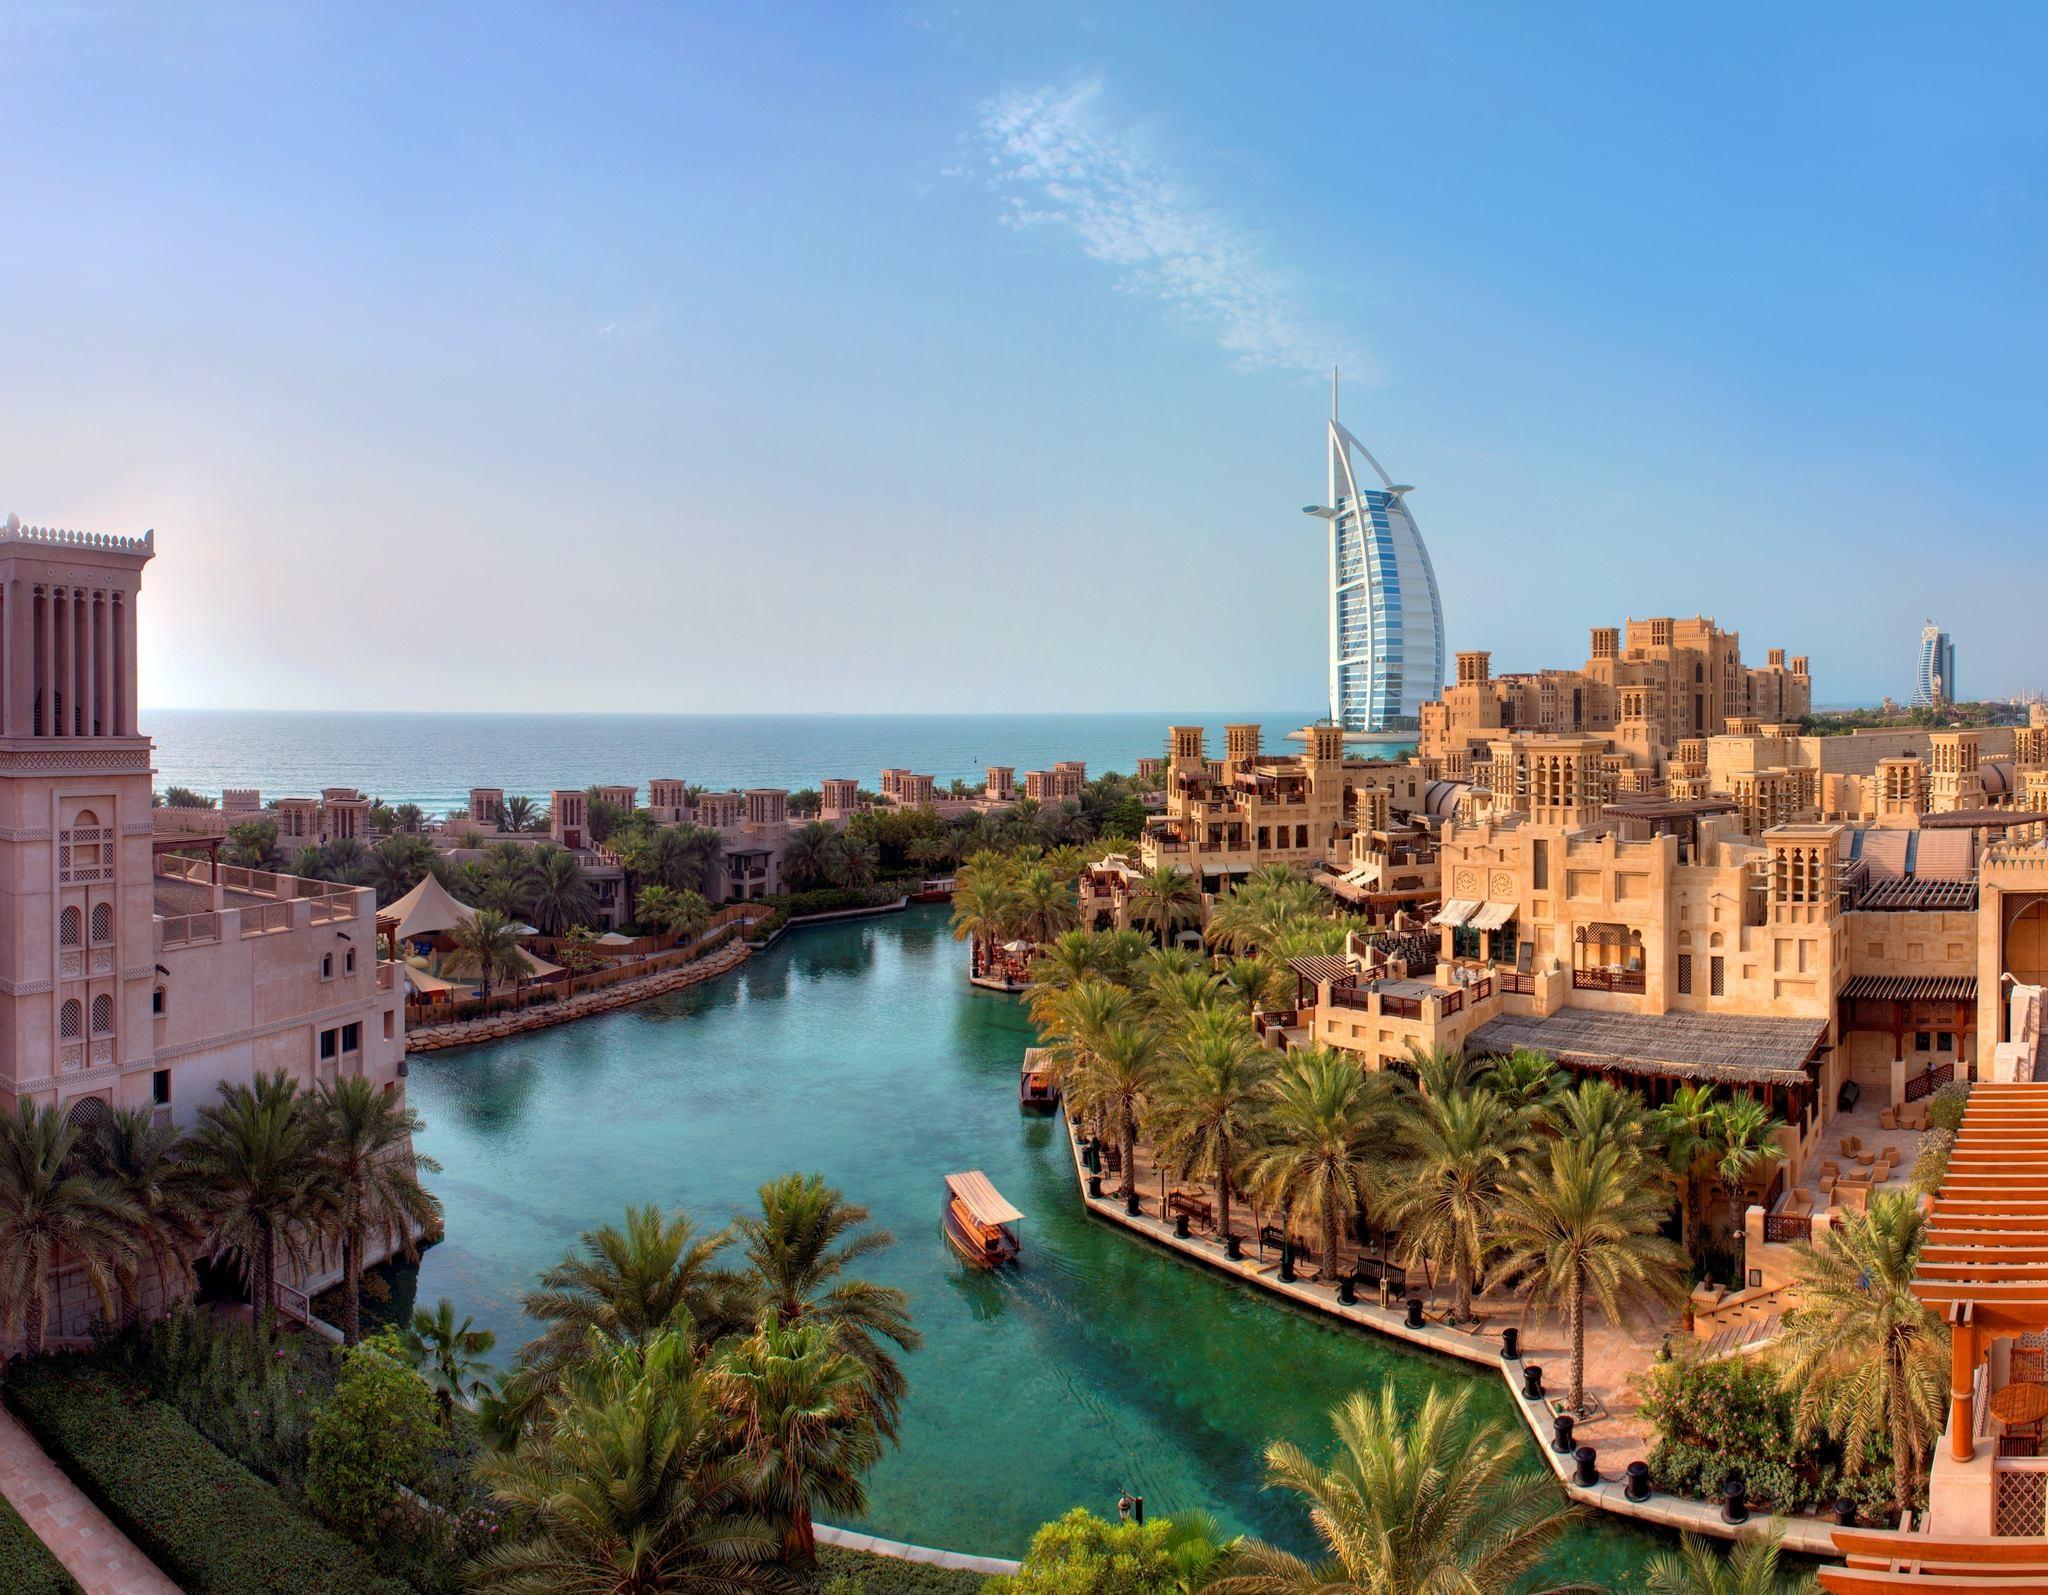 迪拜德伊勒珊瑚酒店 (杜拜) - Coral Dubai Deira ,Hotel - 42則旅客評論及格價